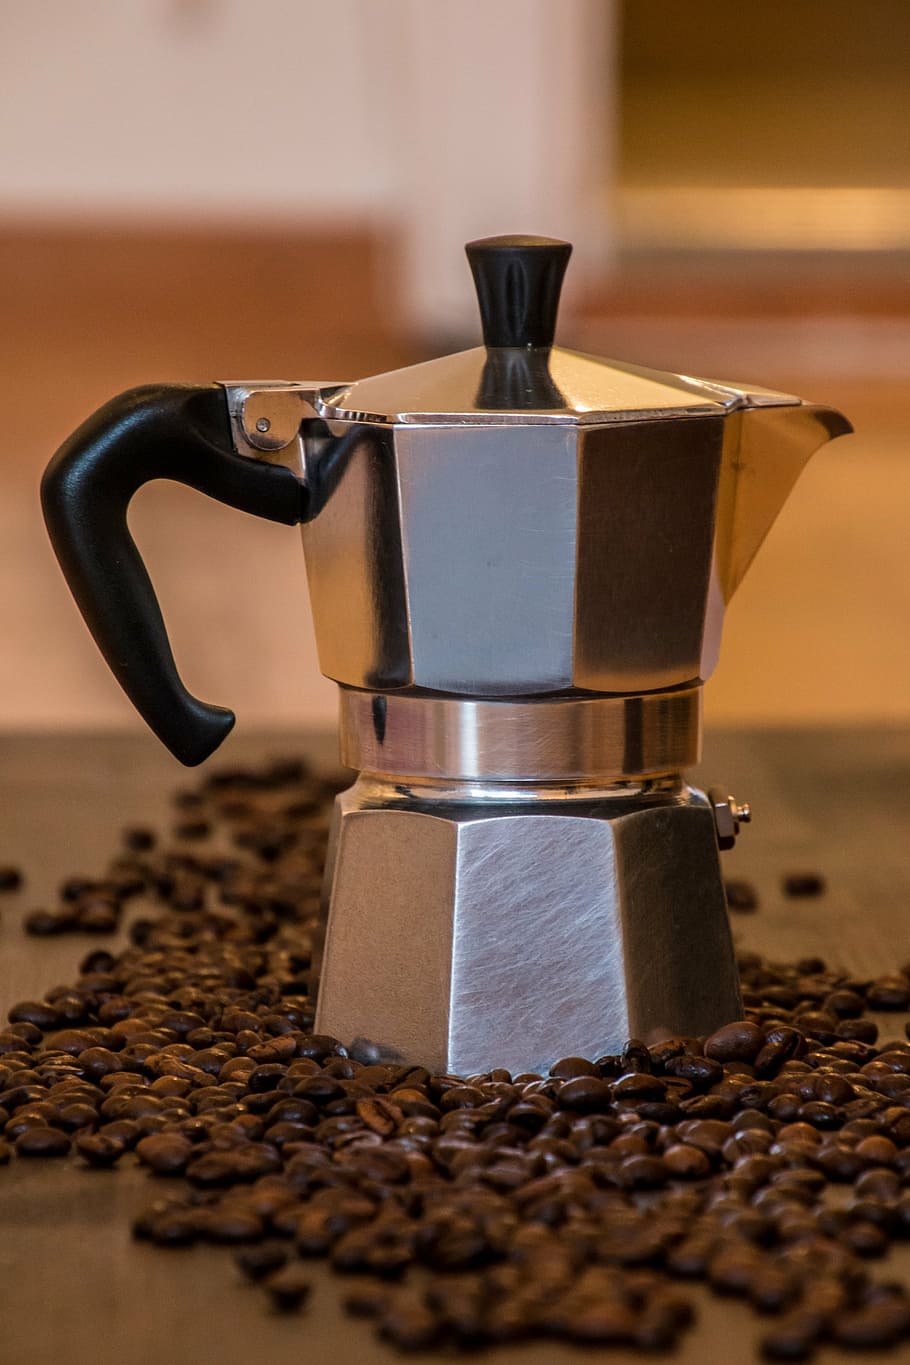 シルバーコーヒーポット, コーヒー, 紅茶, 古いコーヒーメーカー, 古いイタリアのコーヒーマシン, コーヒーを作る, イタリア, 朝食, コーヒーアワー, コーヒーの準備